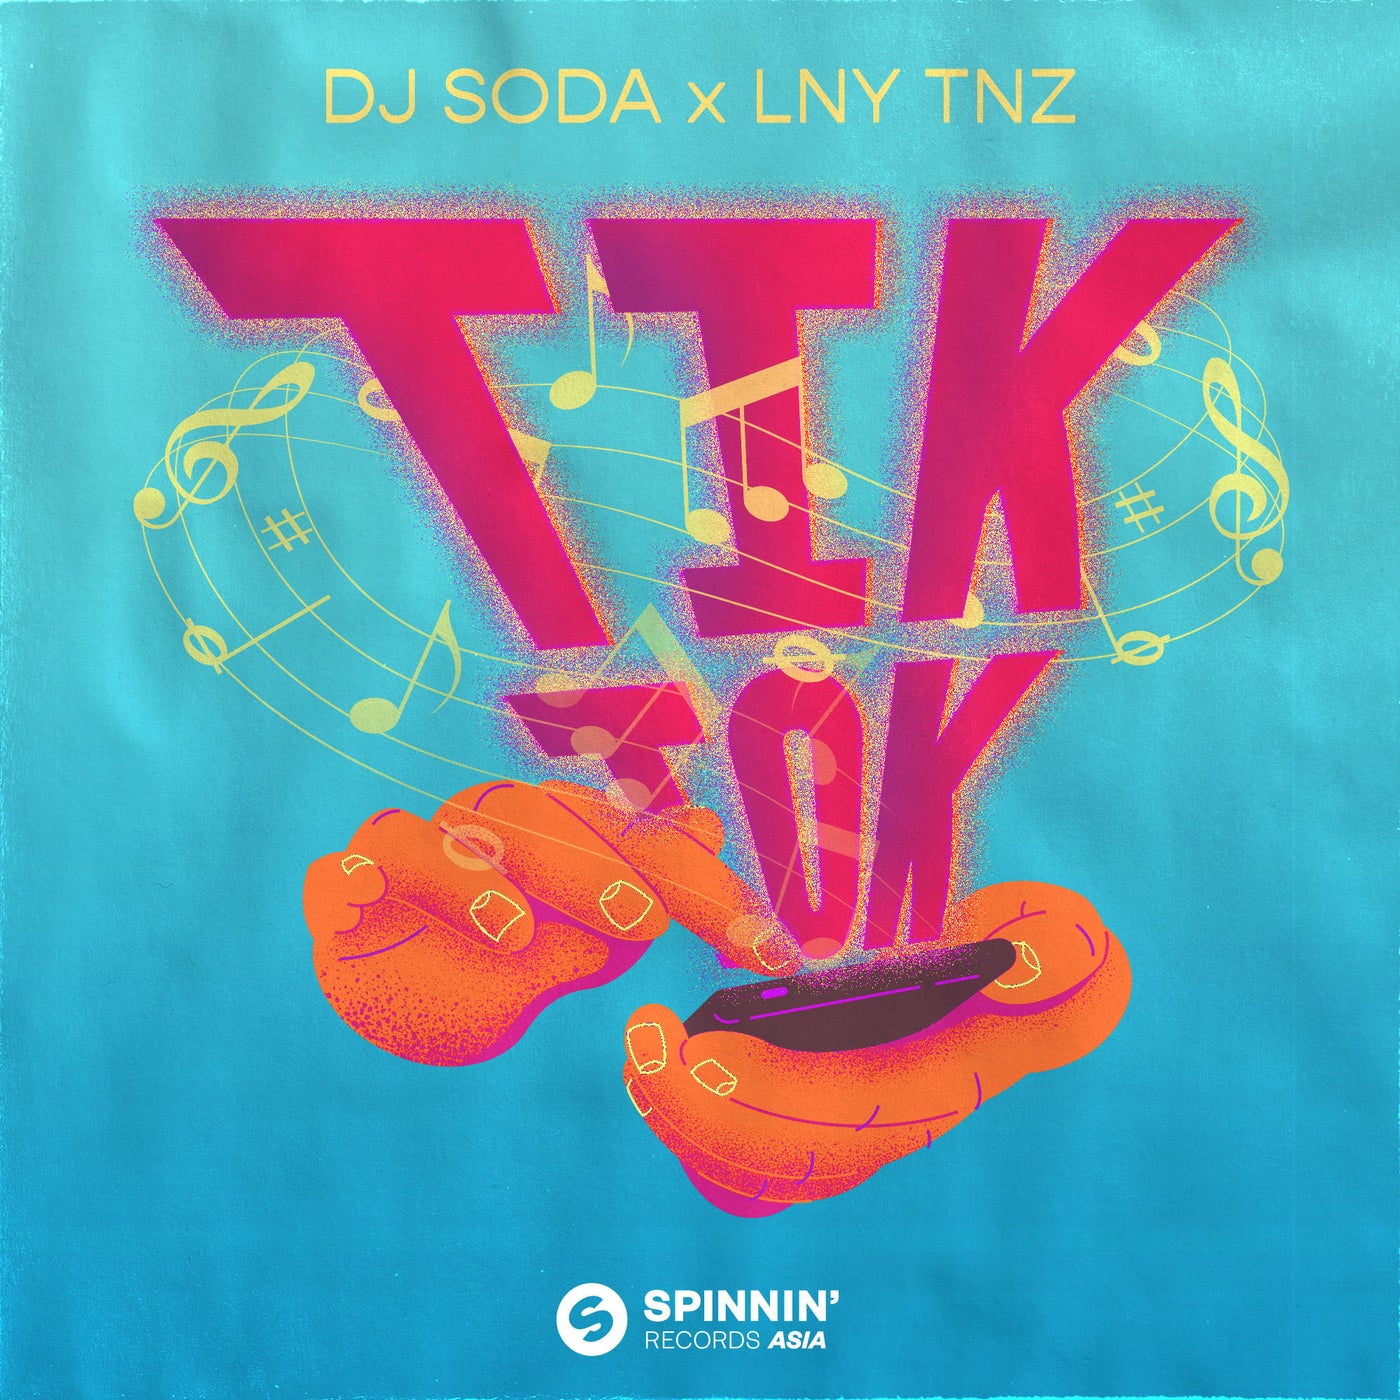 Tik Tok by LNY TNZ and DJ SODA on Beatsource